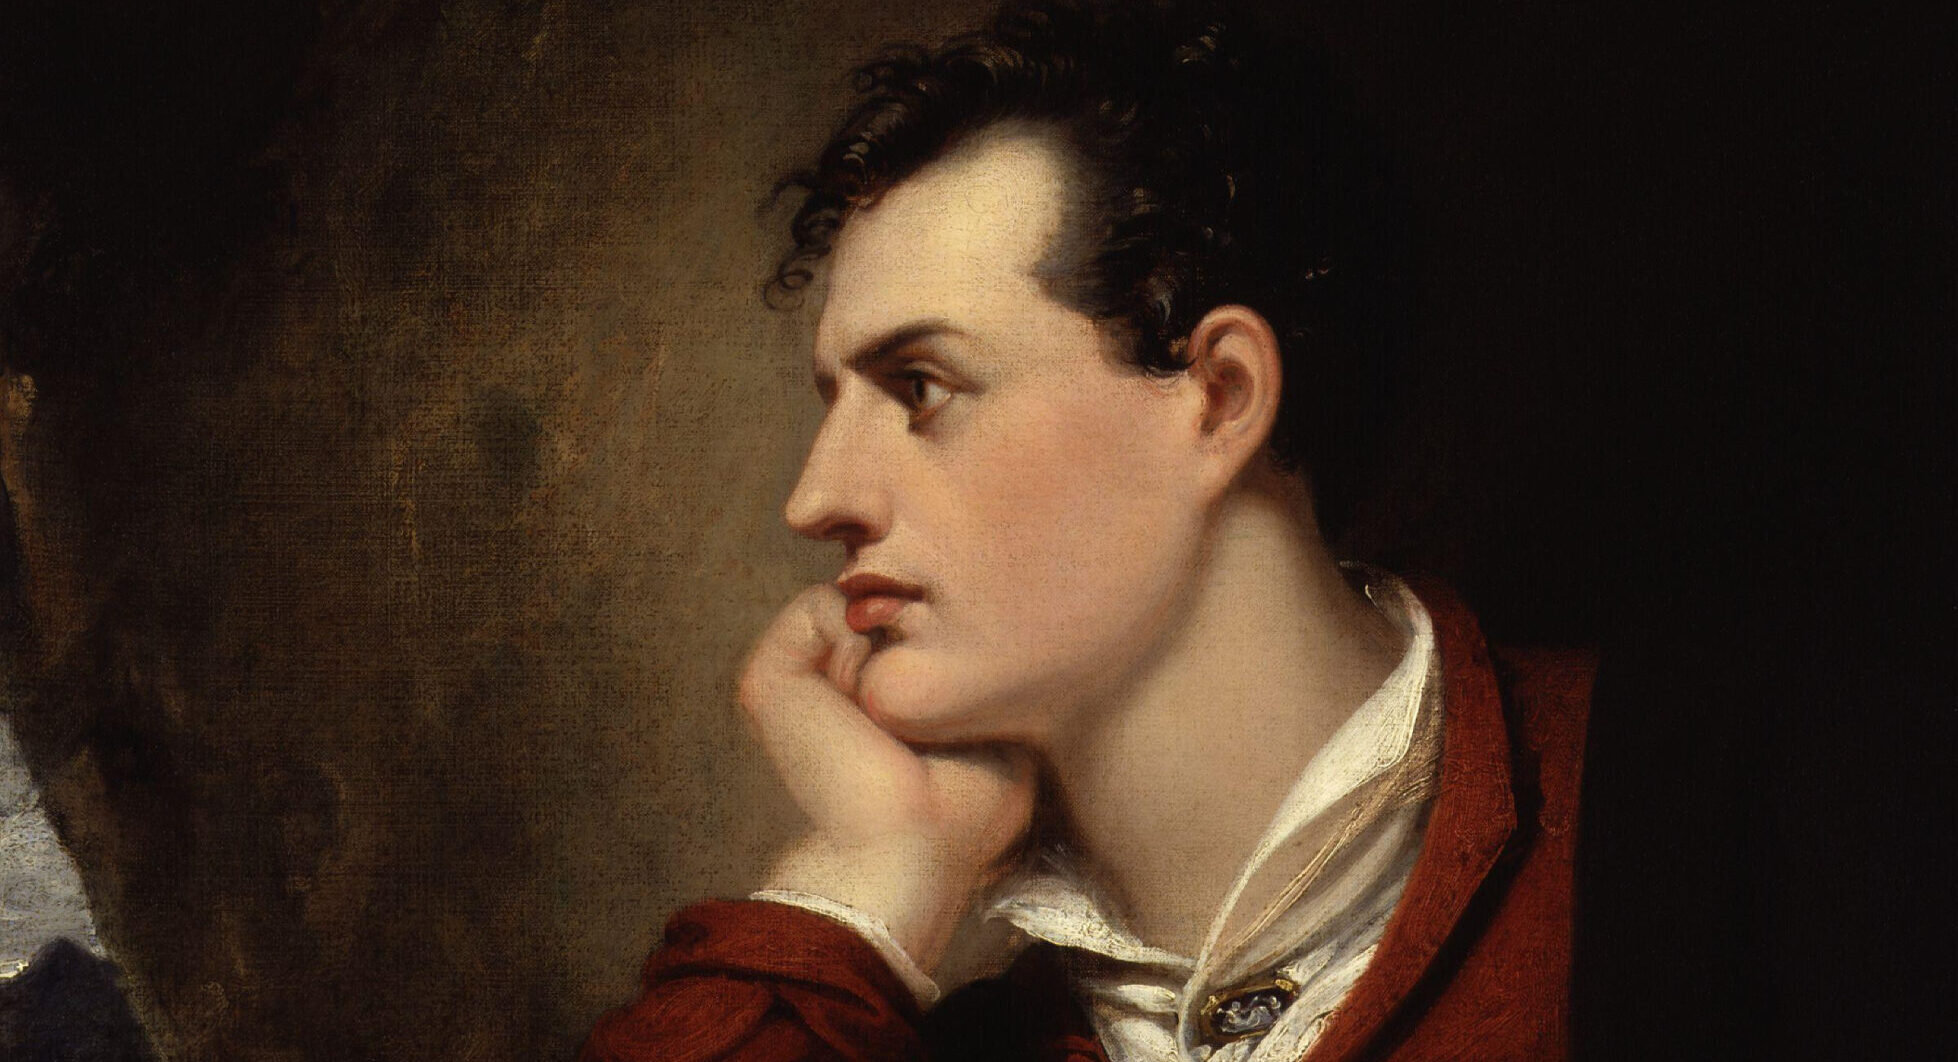 “Le mie passioni e le mie forze mi hanno reso uno straniero”. Tre traduzioni e cinque sonetti per lord George Byron, morto in Grecia, per la Grecia, il 19 aprile 1824